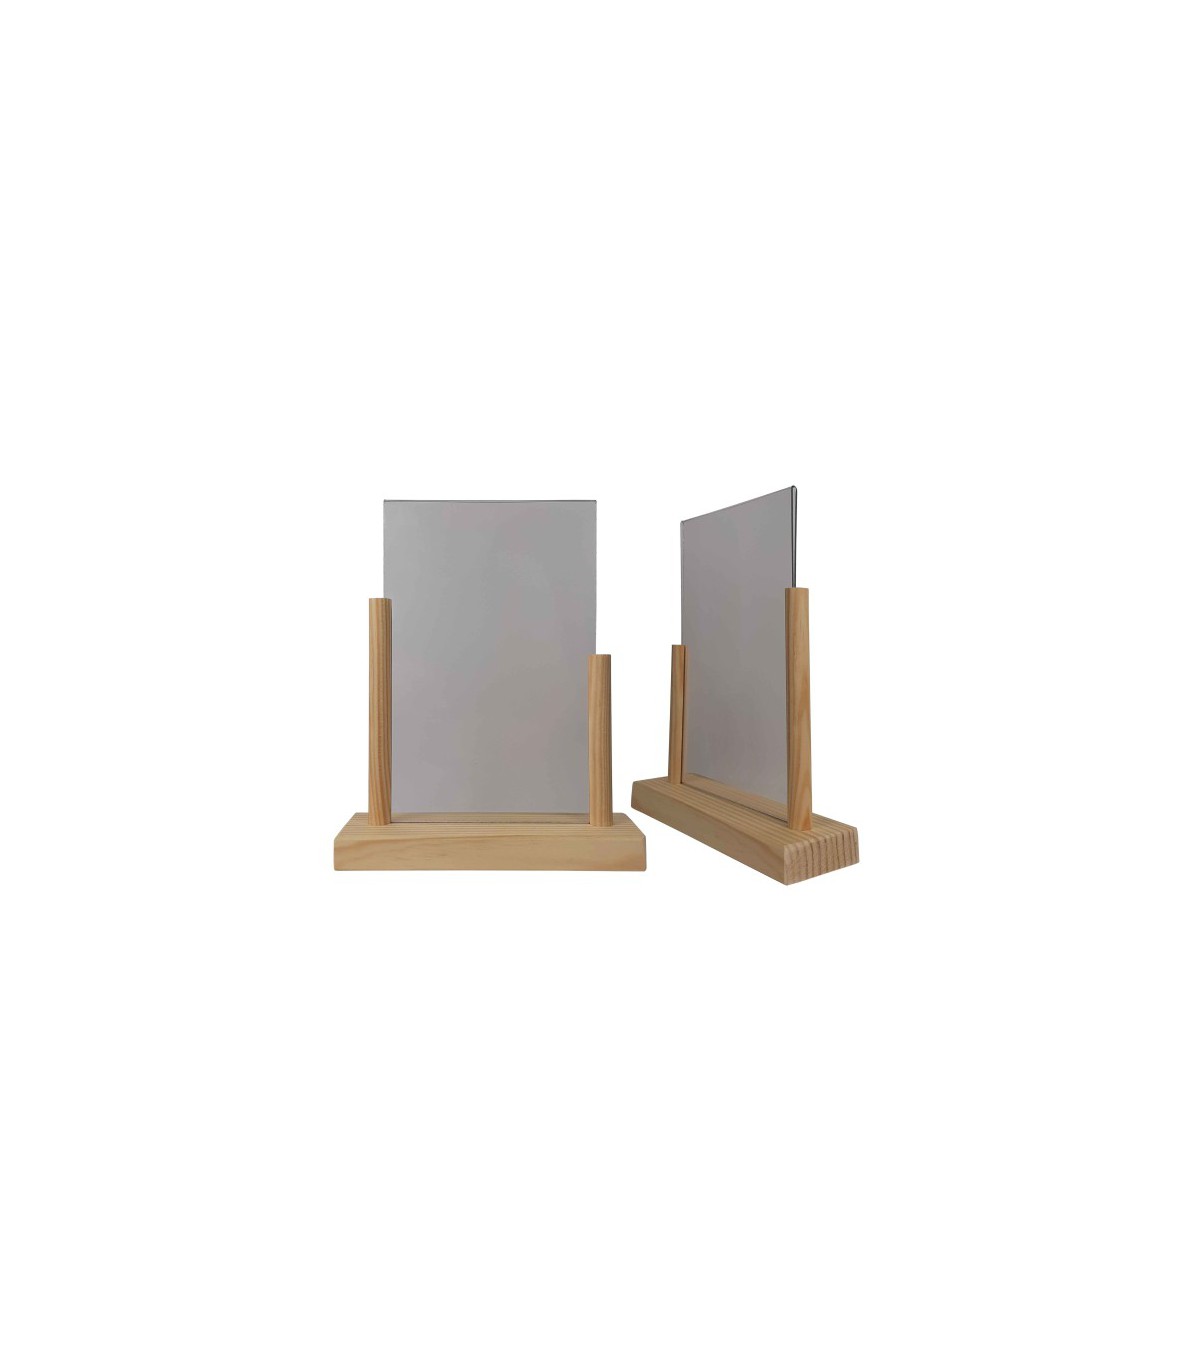 Porte menu bois brut avec plexi A5 - Lot de 2. Fabrication